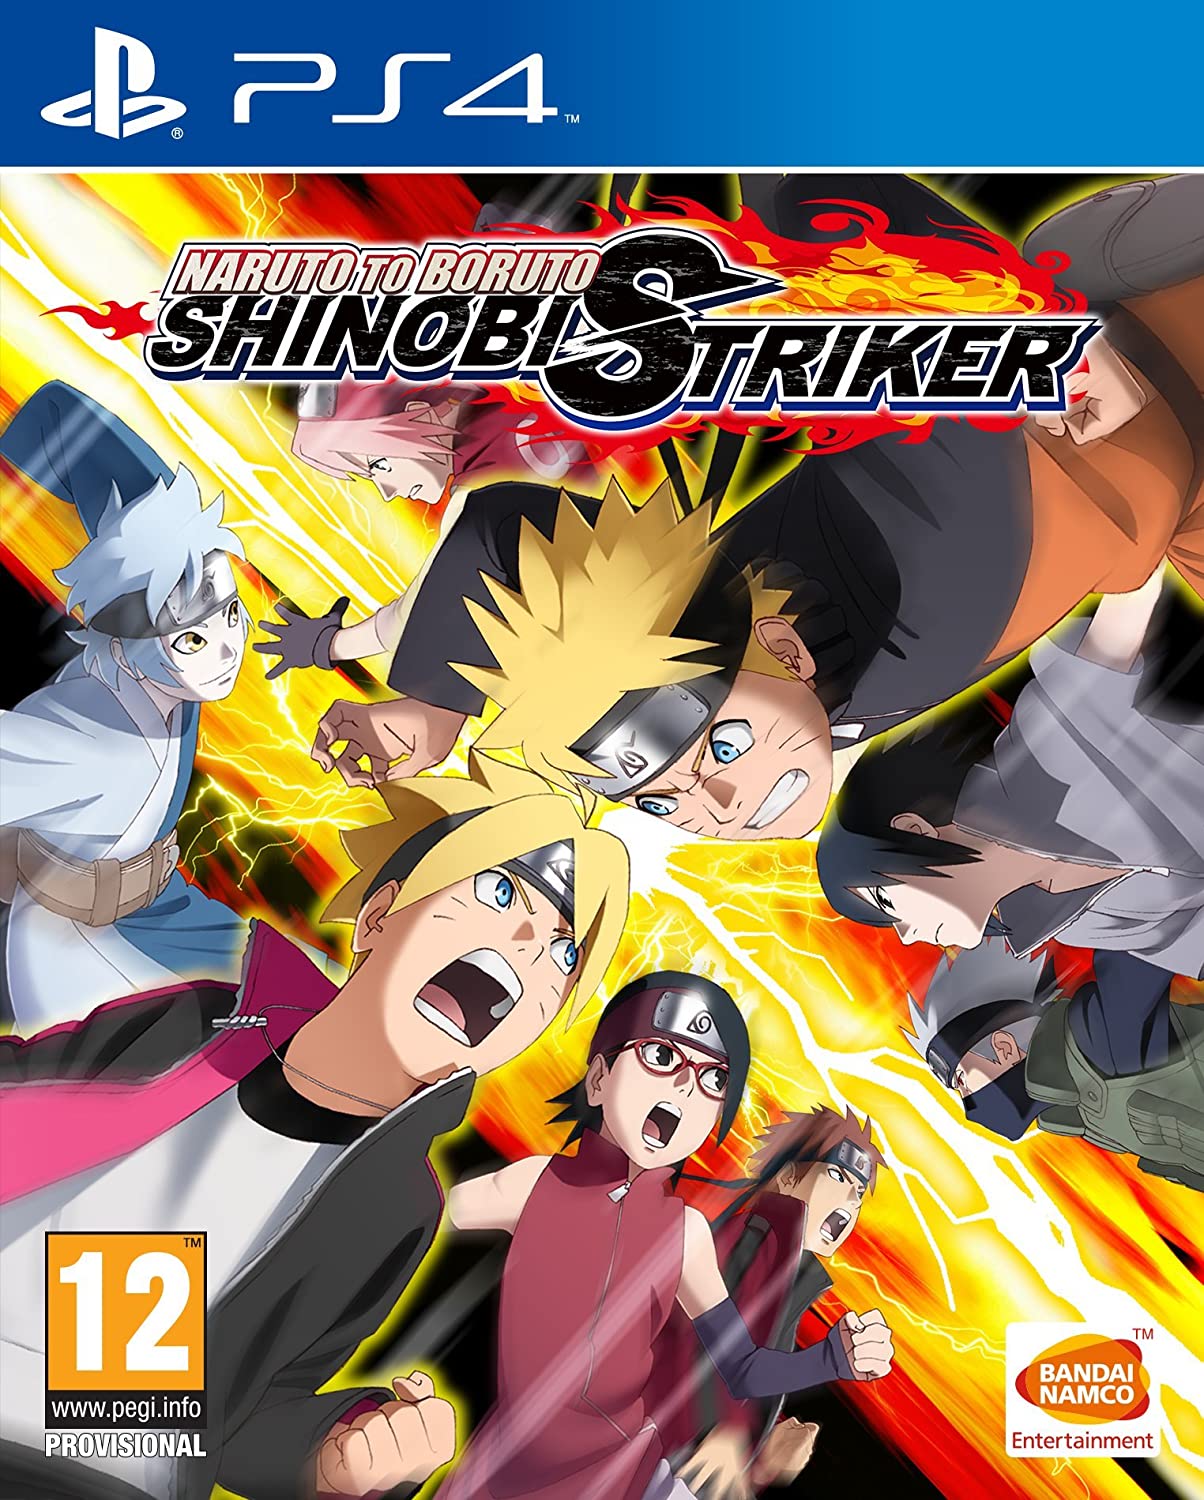 Naruto to Boruto: Shinobi Striker reveals Kakashi